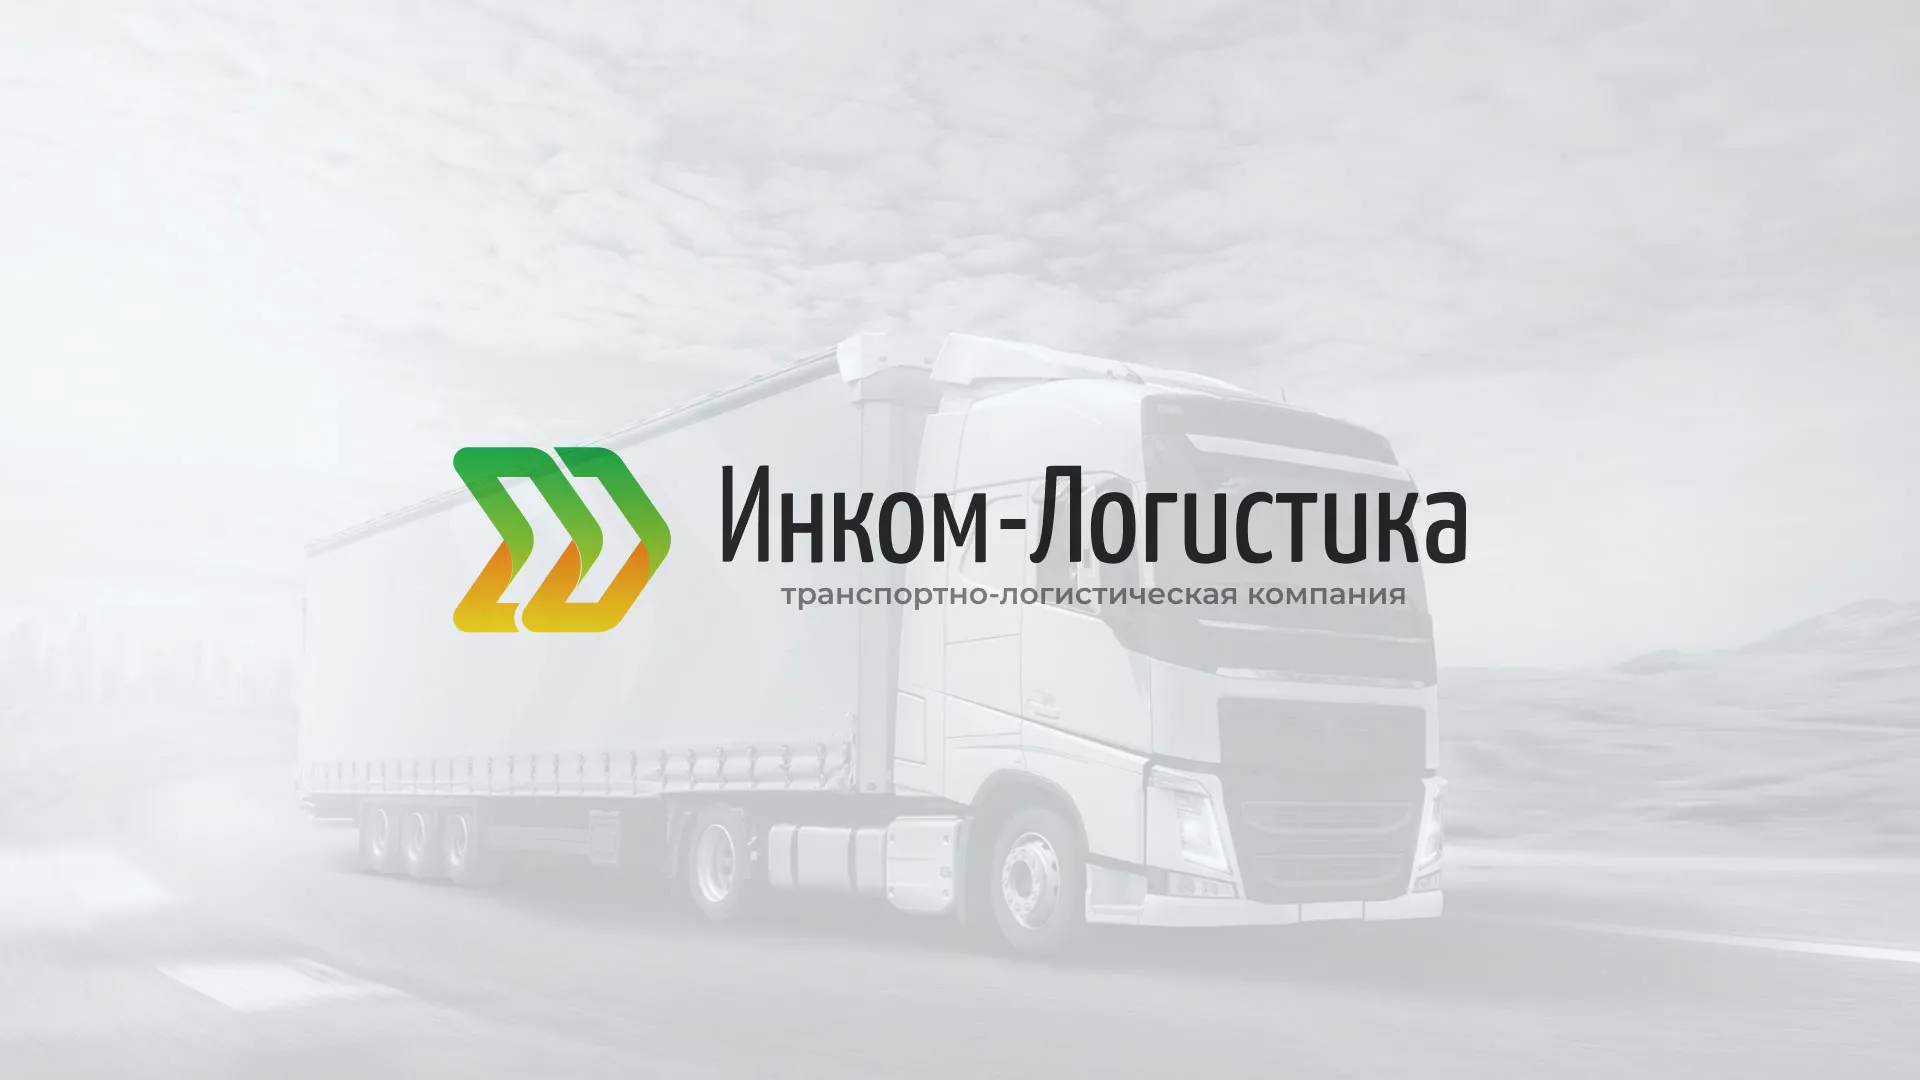 Разработка логотипа и сайта компании «Инком-Логистика» в Конаково